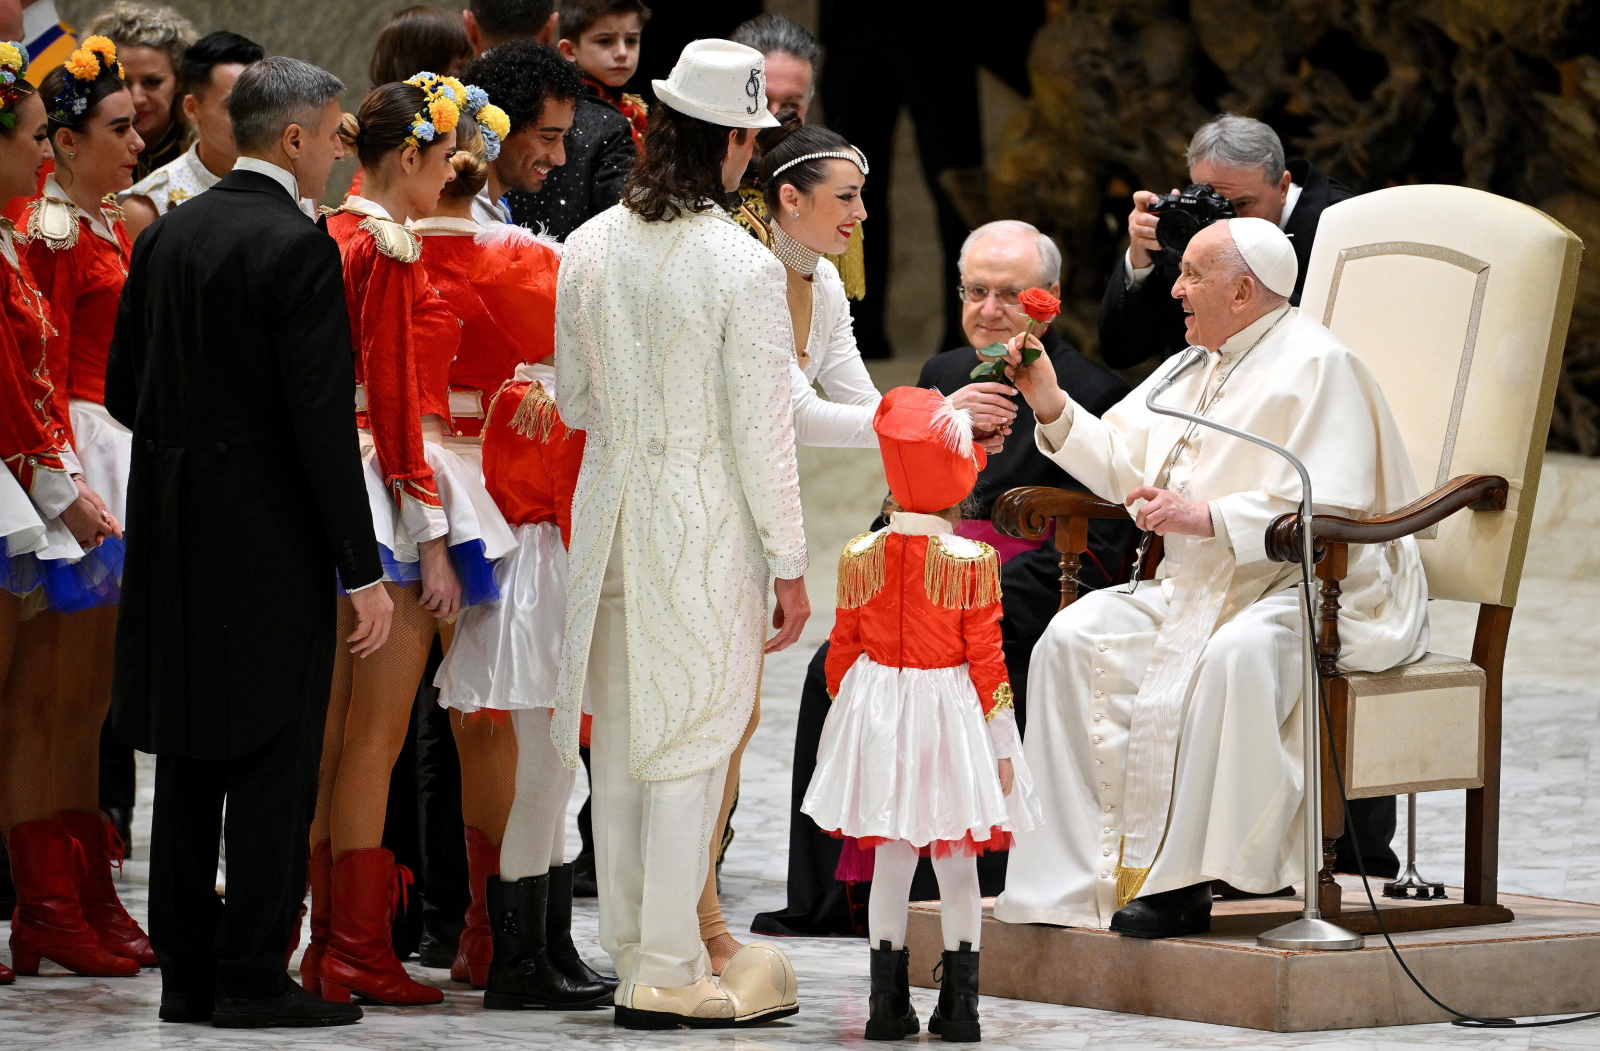 Papież: Musimy bronić miłości, wygrać batalię z rozwiązłością Radio Zachód - Lubuskie